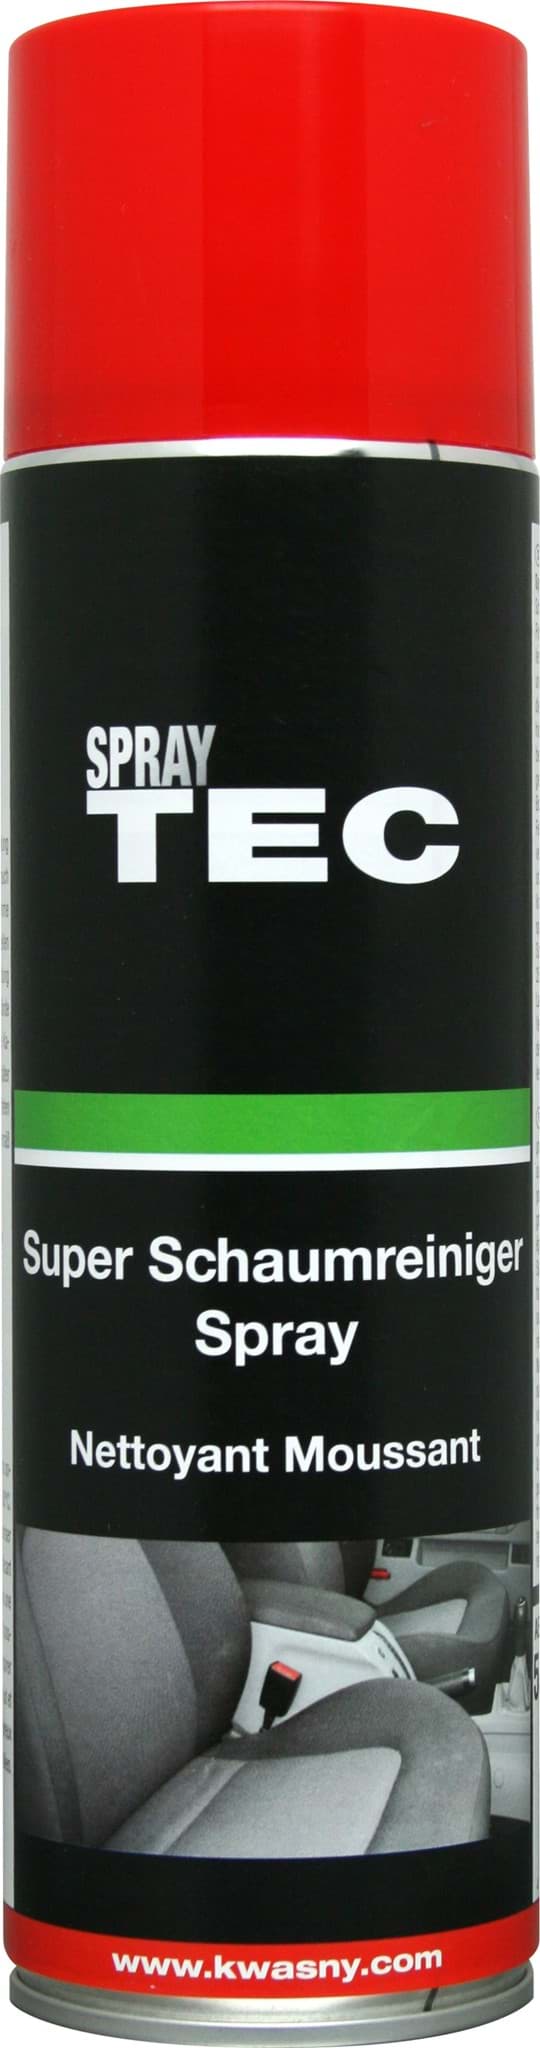 Picture of Super Schaumreiniger Spray 500ml SprayTEC